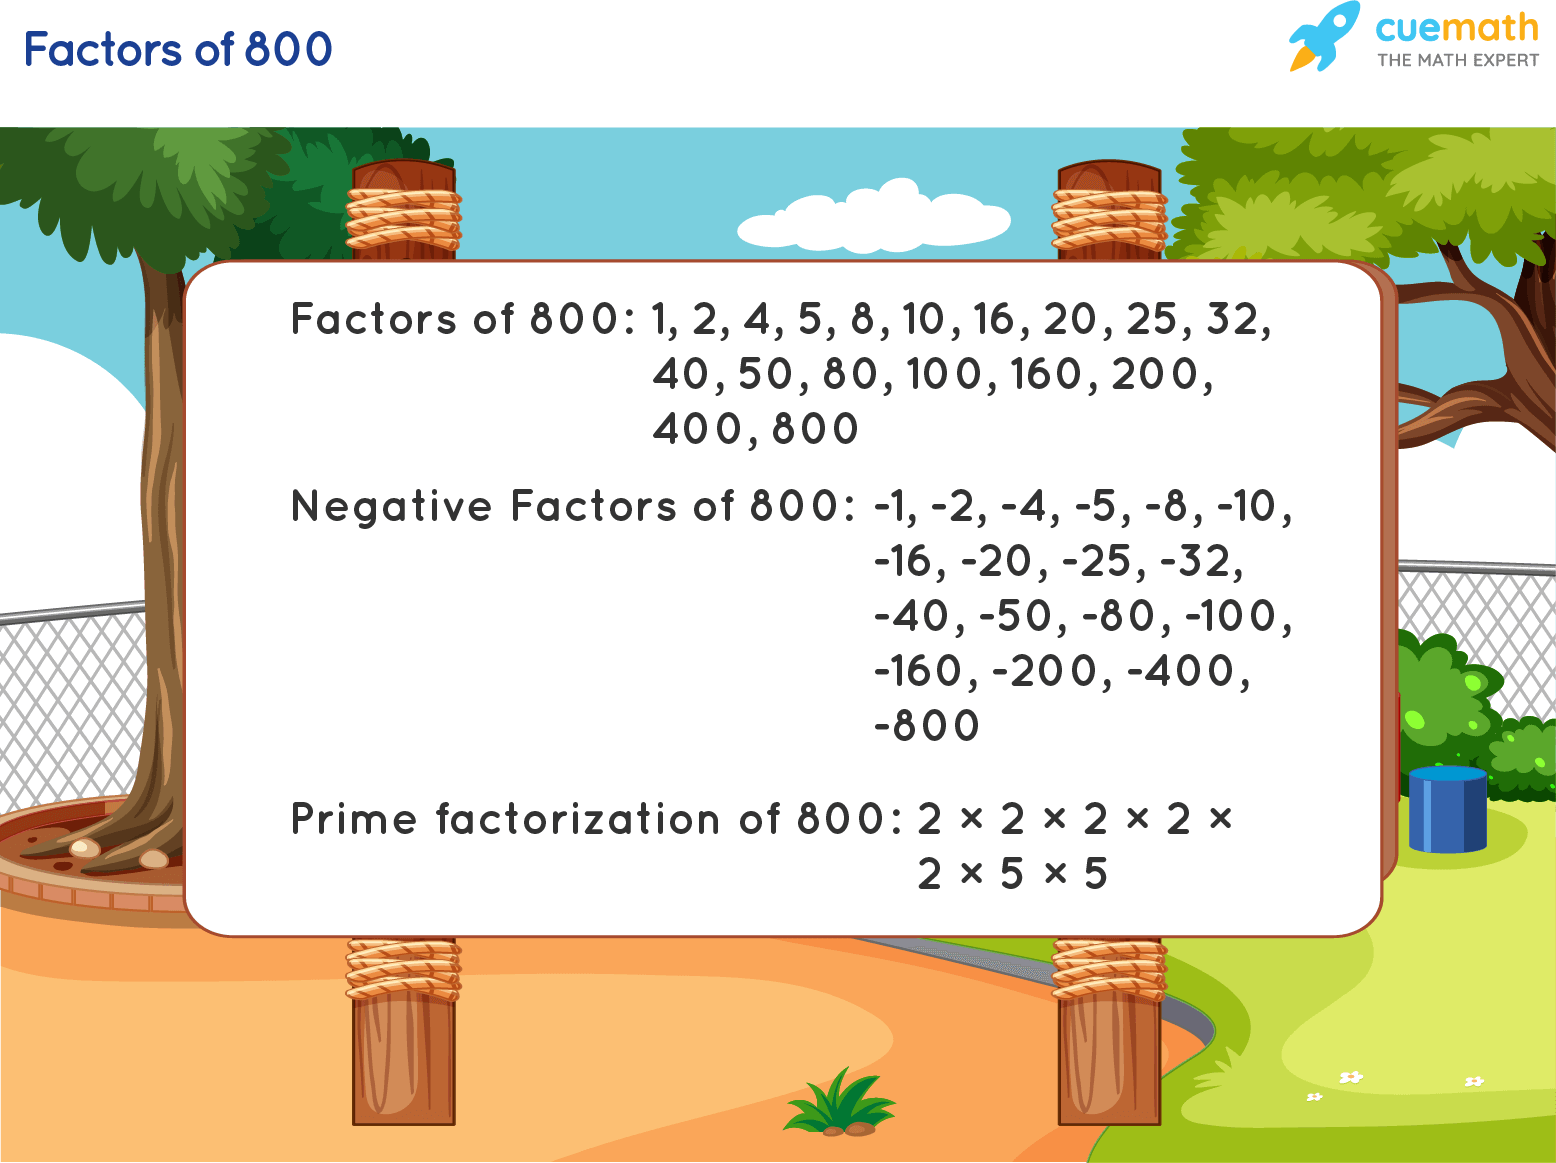 Factors of 800